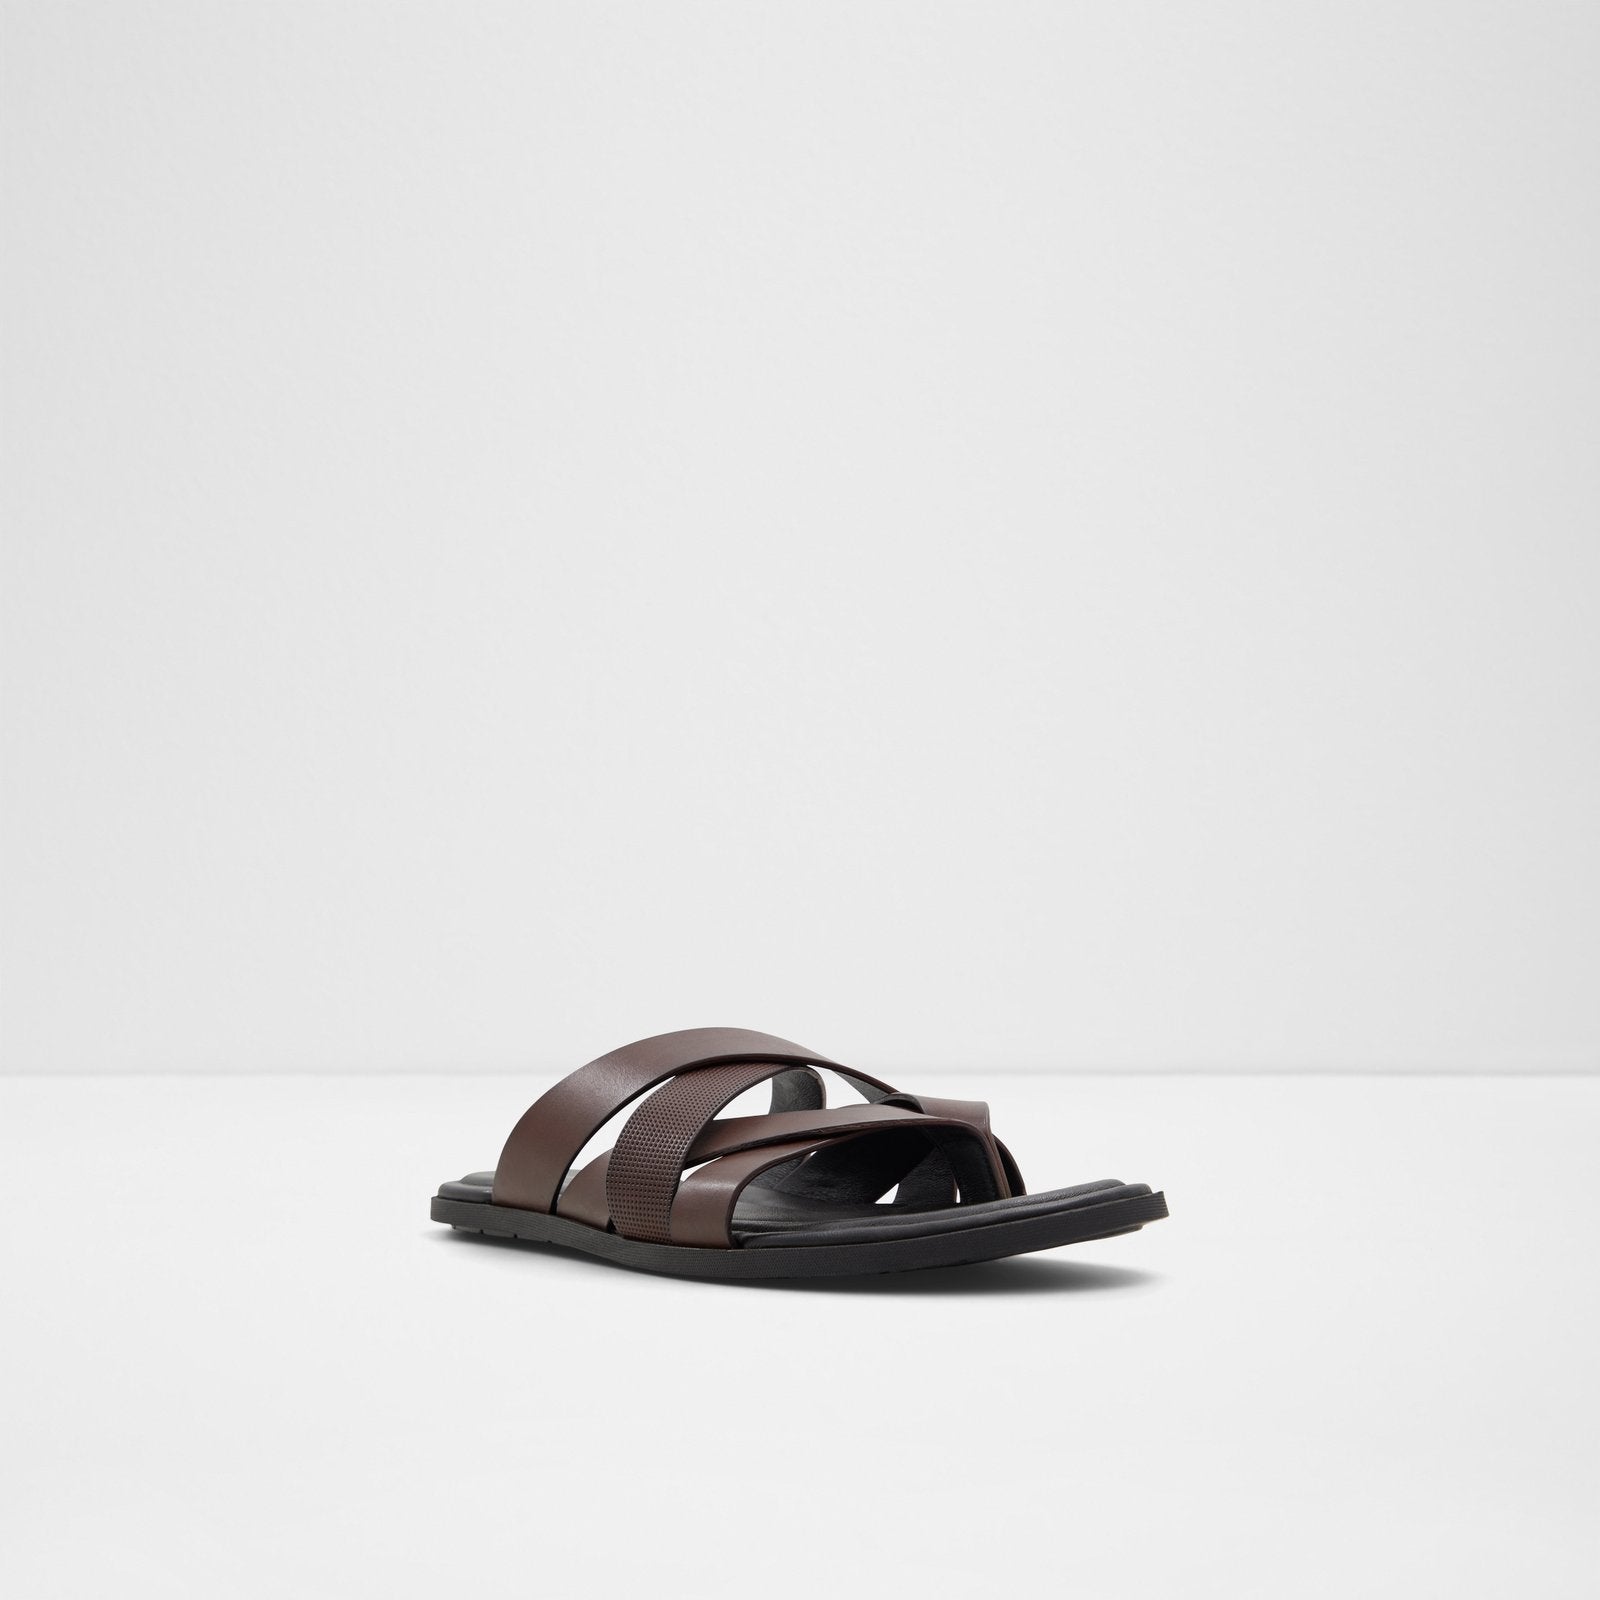 Zaanstraat / Flat Sandals Men Shoes - Dark Brown - ALDO KSA